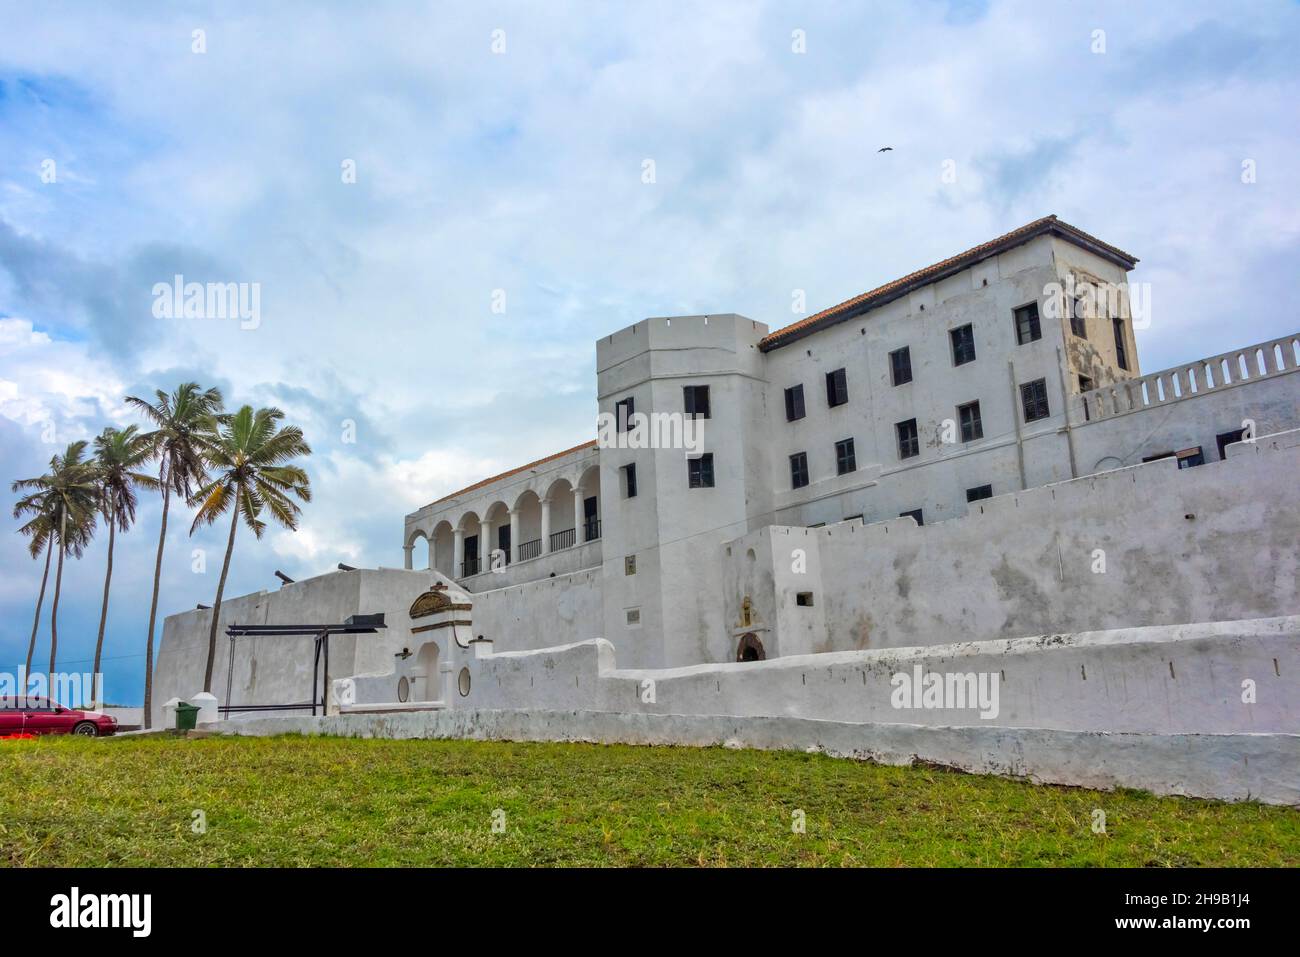 Château d'Elmina (Château de Saint George/fort Saint Jorge), site classé au patrimoine mondial de l'UNESCO, Elmina, région centrale, Ghana Banque D'Images